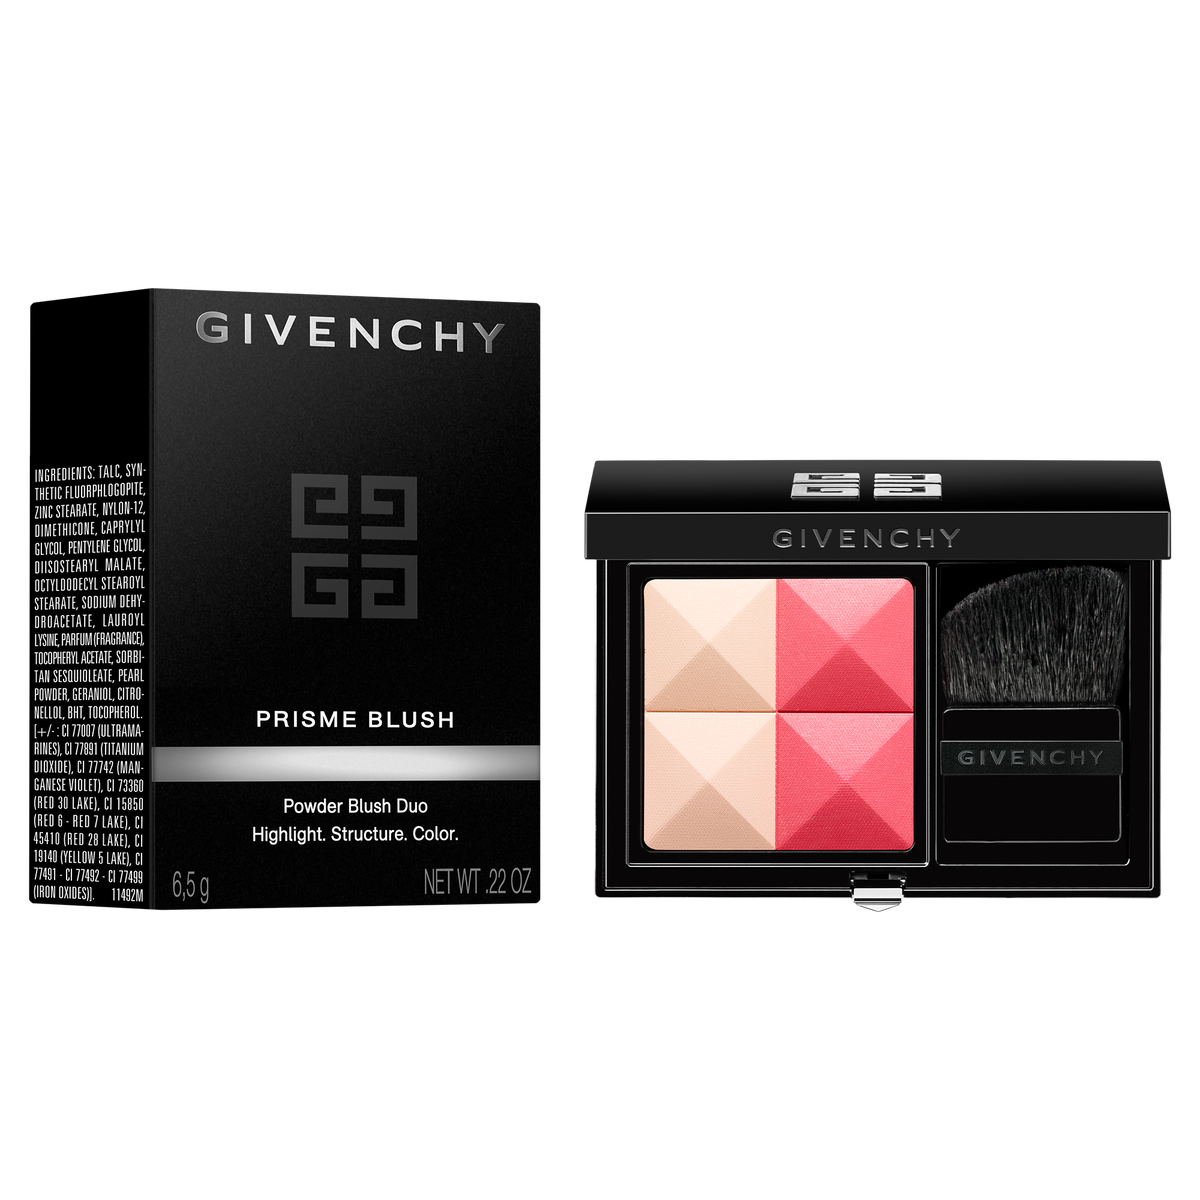 جيفنشي بلاشر بريزم بلاش بودر ديو Givenchy Prisme Blush Powder Duo